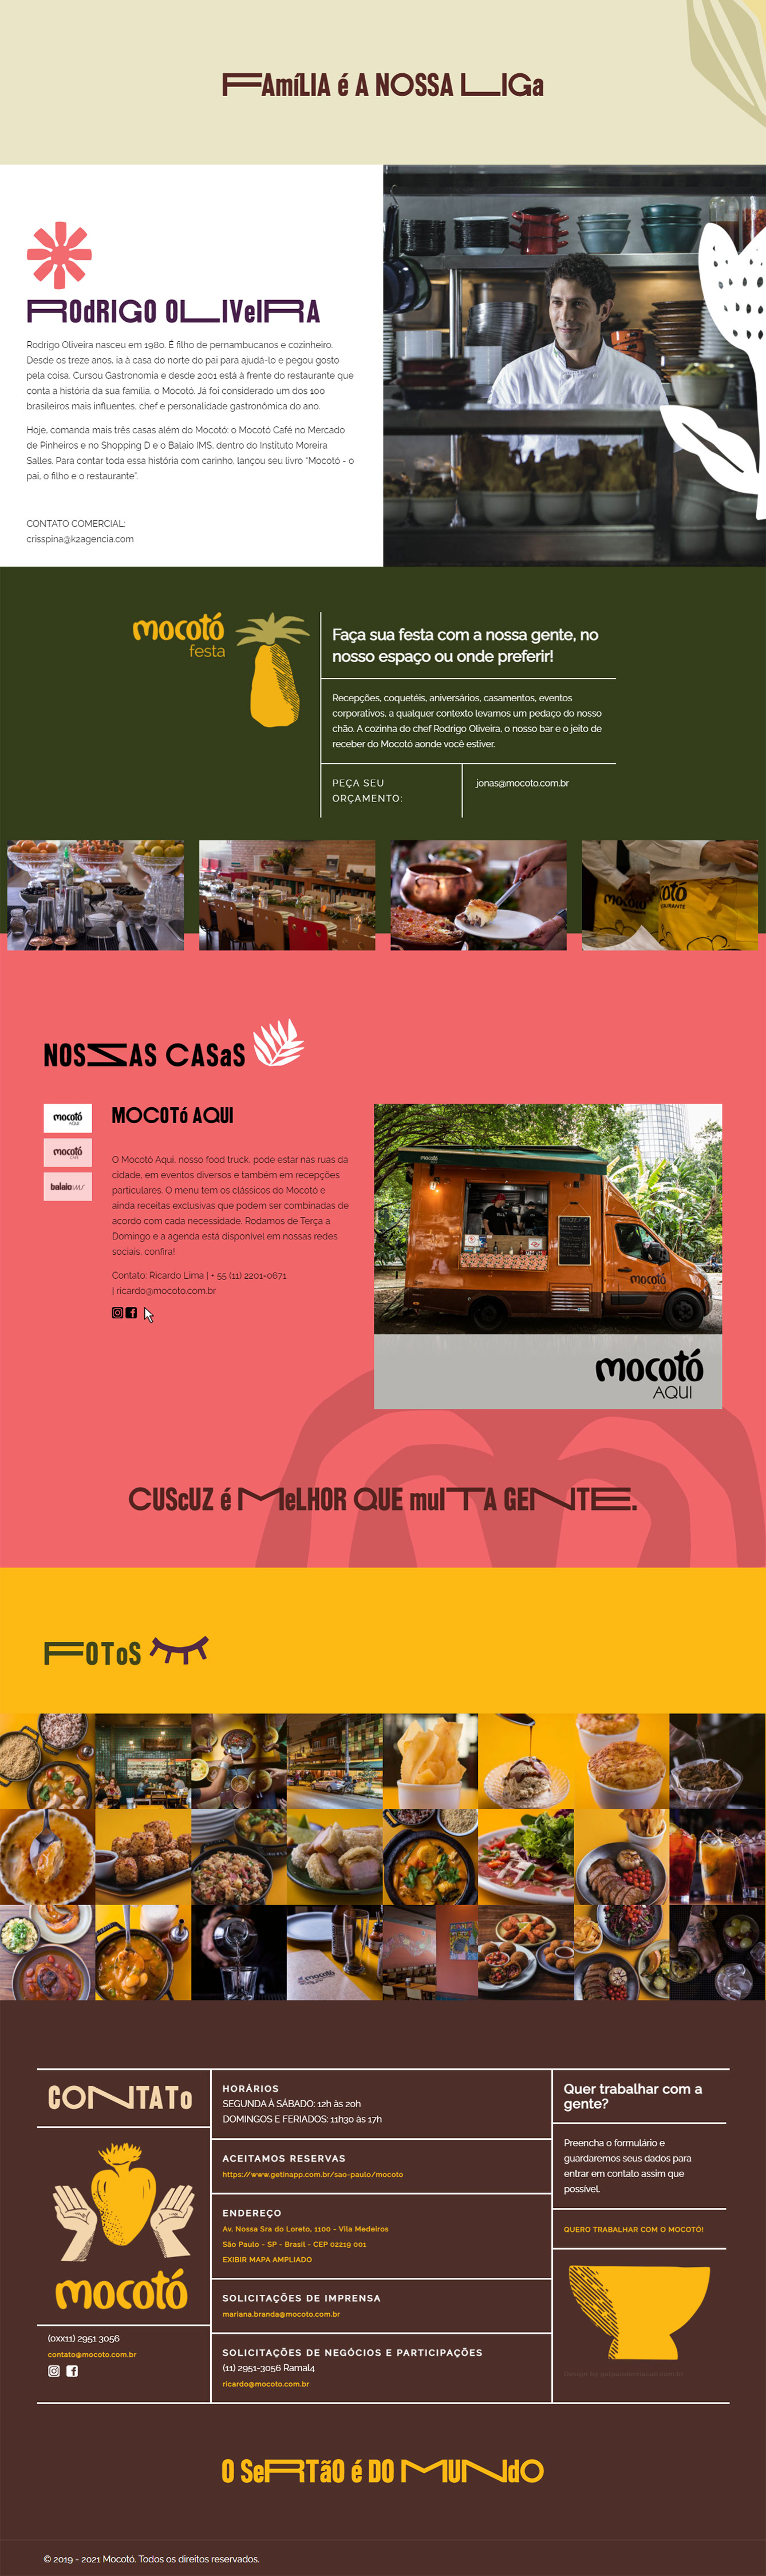 mocoto-restaurante02